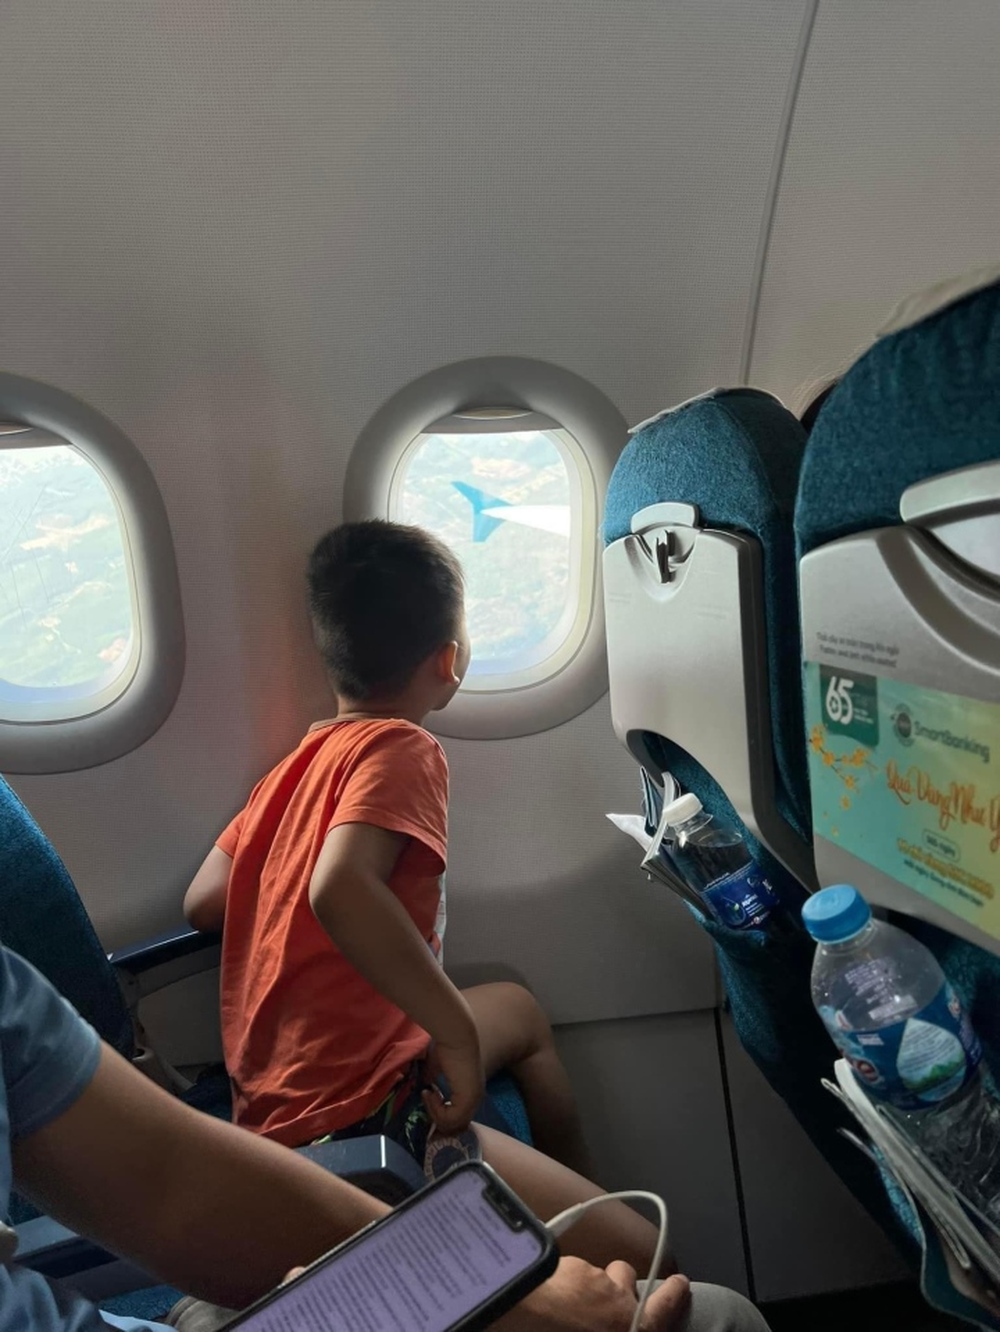 Màn ‘giao dịch’ của cậu bé lần đầu đi máy bay không được ngồi gần cửa sổ gây sốt - Ảnh 2.